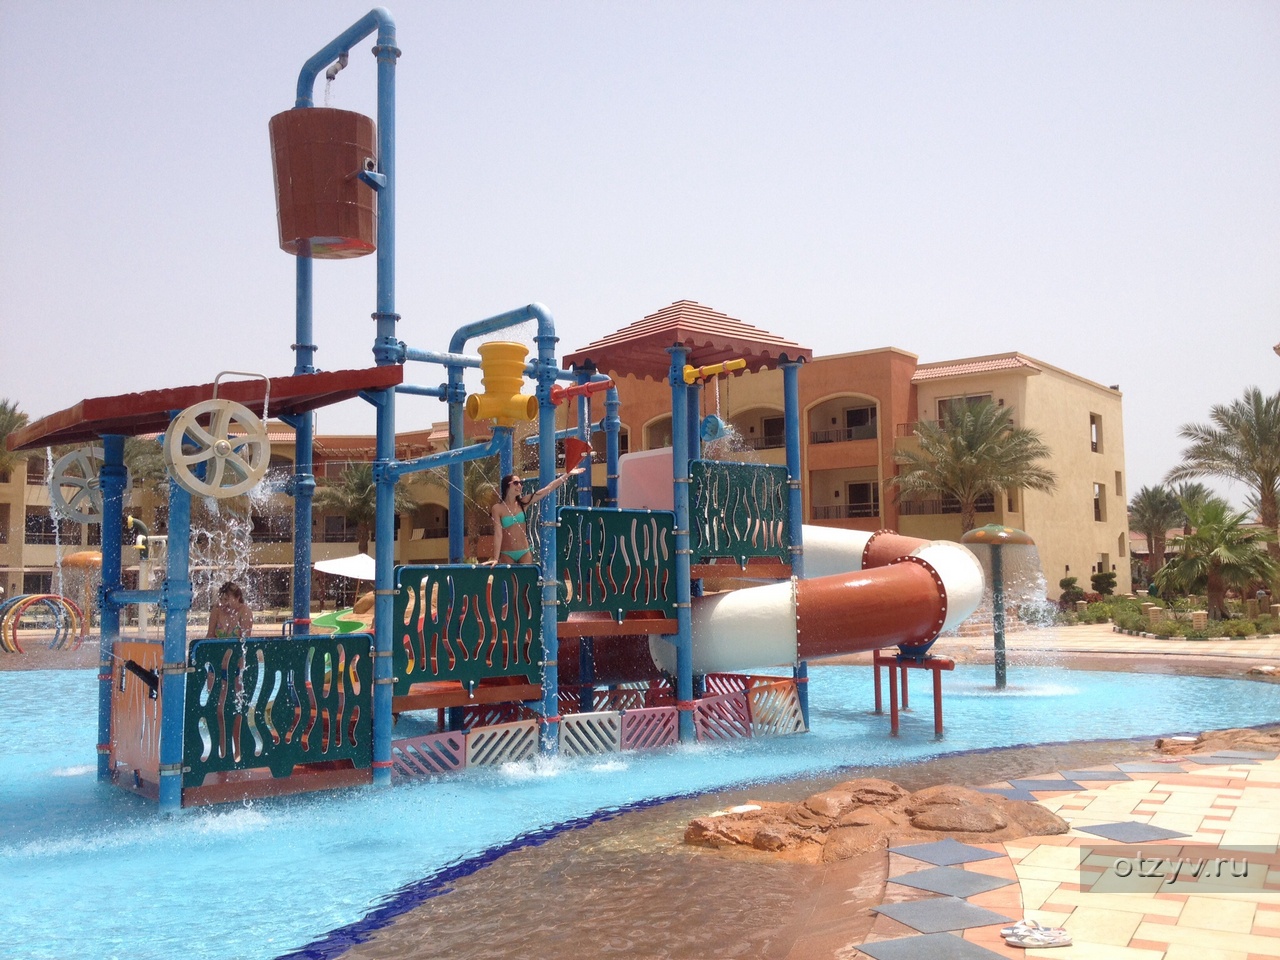 Regency plaza aqua park spa отзывы. Египет,Шарм-Эль-Шейх,Regency Plaza Aqua Park. Regency Plaza Aqua Park Spa 5 Египет. Редженси Плаза Шарм-Эль-Шейх 5. Отель Редженси Плаза аквапарк Шарм-Эль-Шейх.